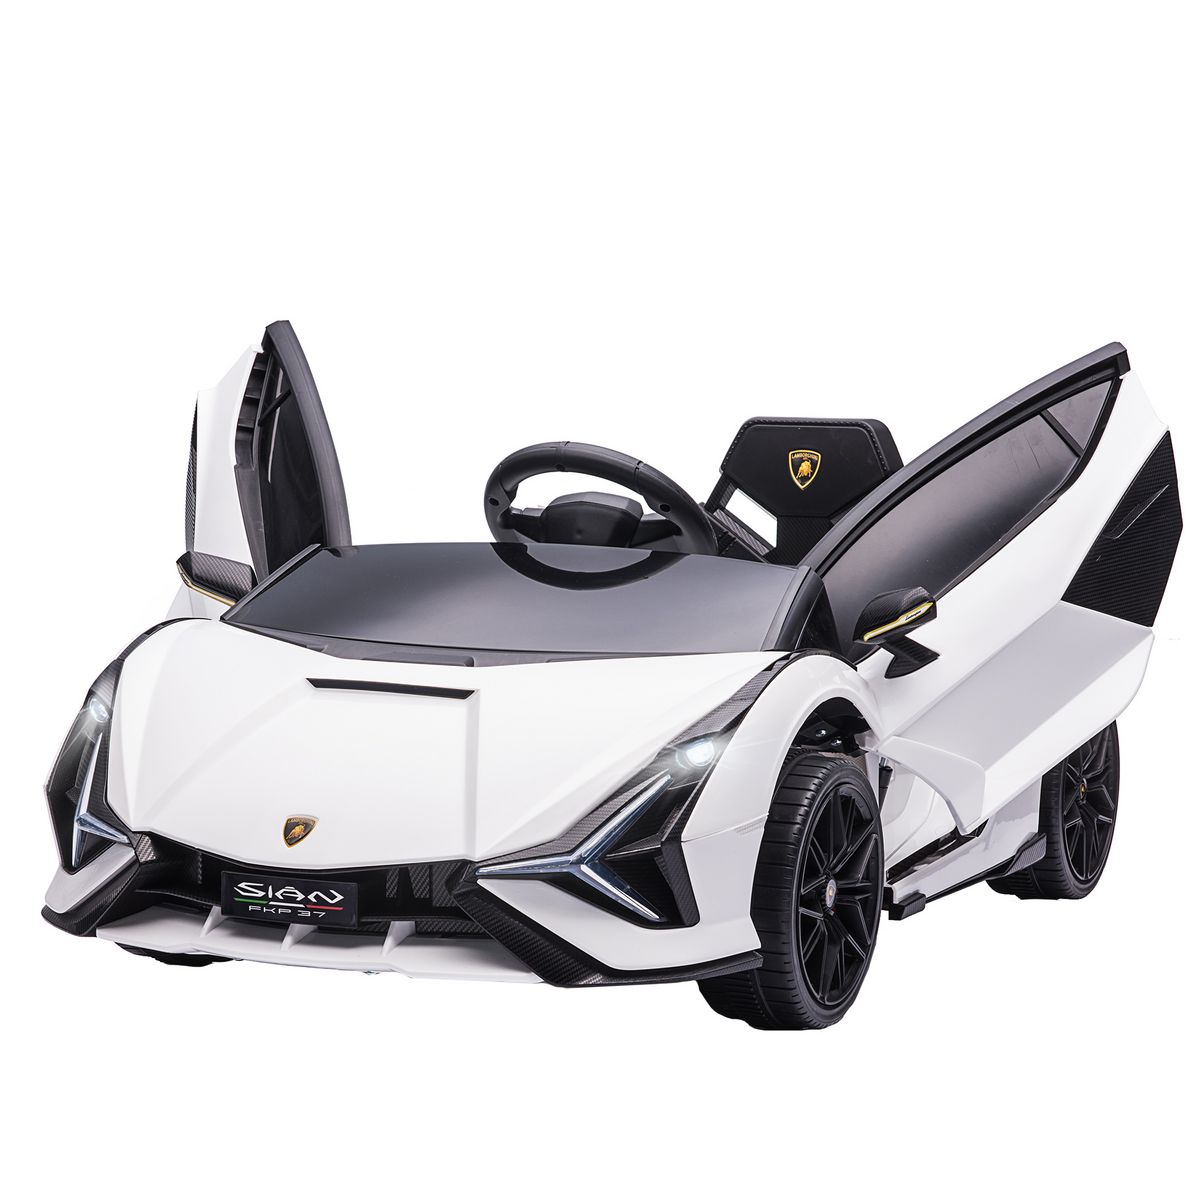 HOMCOM Voiture électrique enfant véhicule électrique enfant de sport supercar 12 V - V. Max. 8 Km/h télécommande incluse ouverture portes MP3 USB effets sonores lumineux blanc